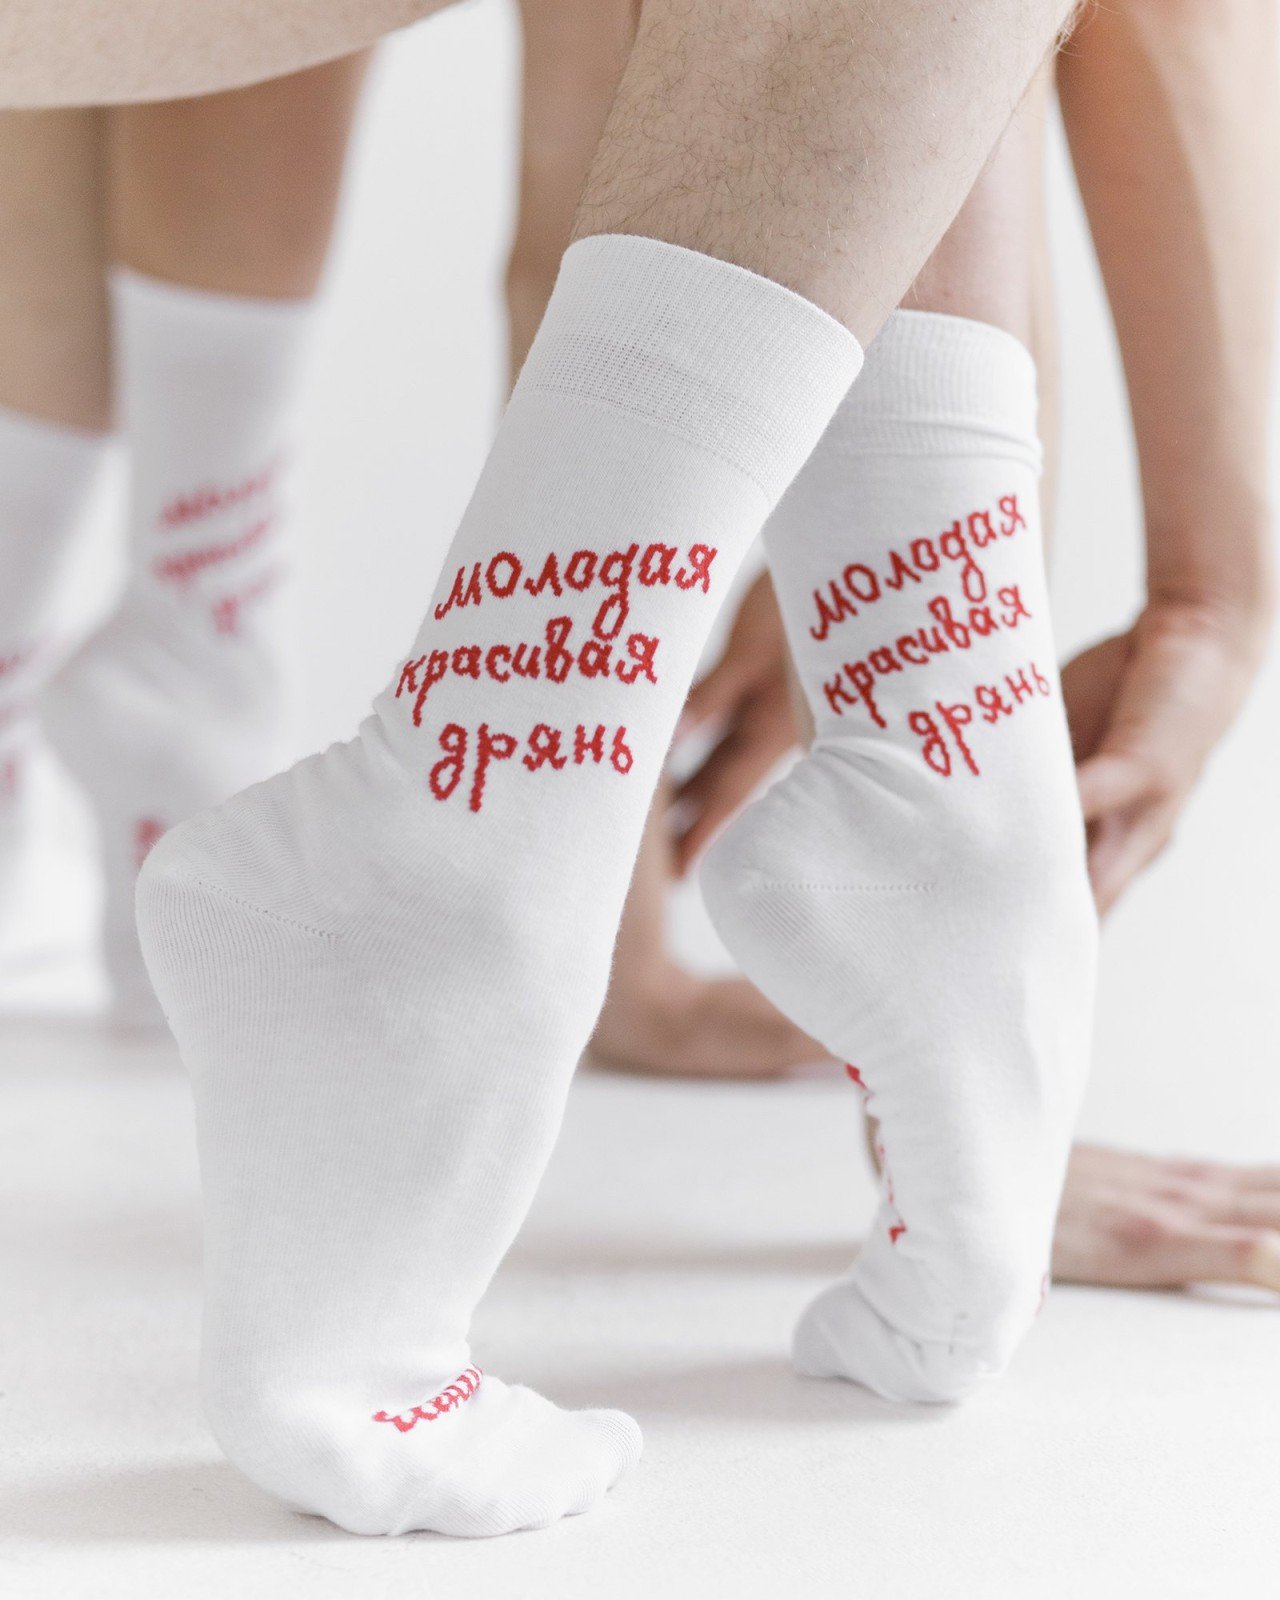 Стеснение пропало: самая бесстыжая коллекция носков St. Friday Socks